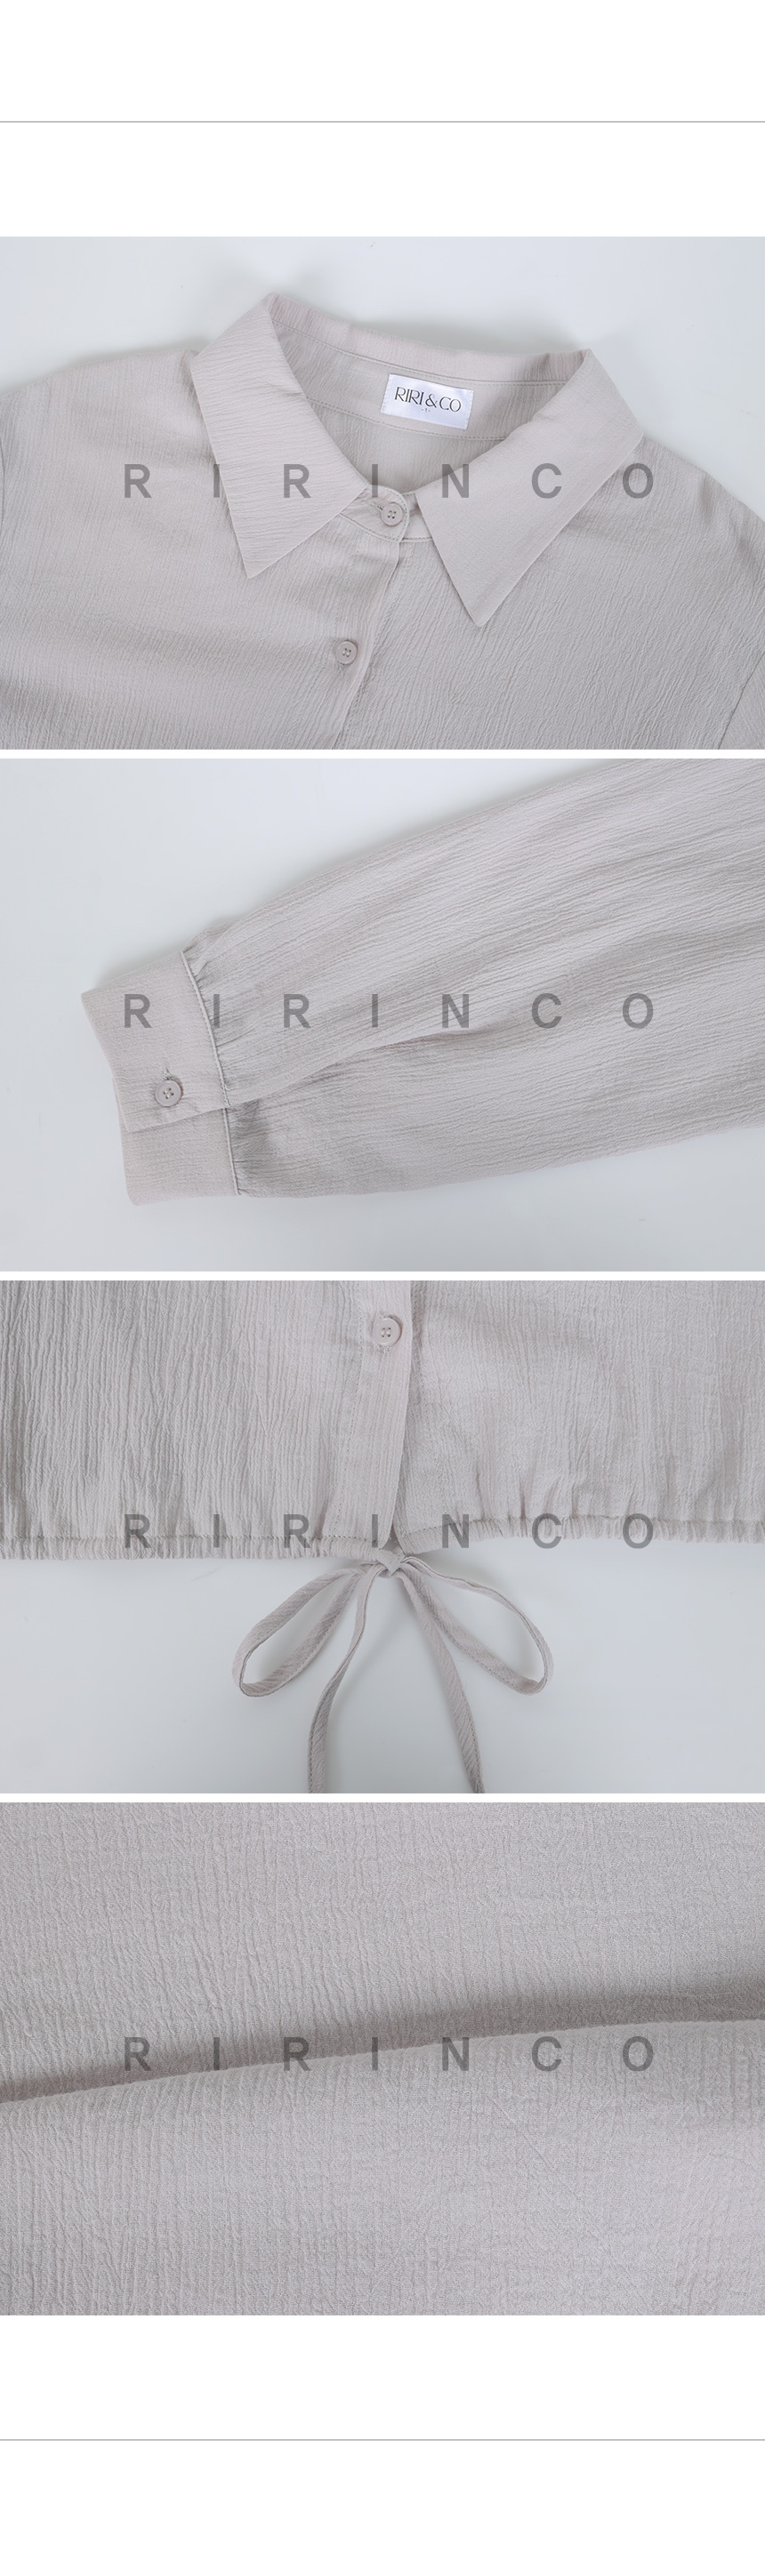 RIRINCO リンクル裾ストリング付きセミクロップドシャツ